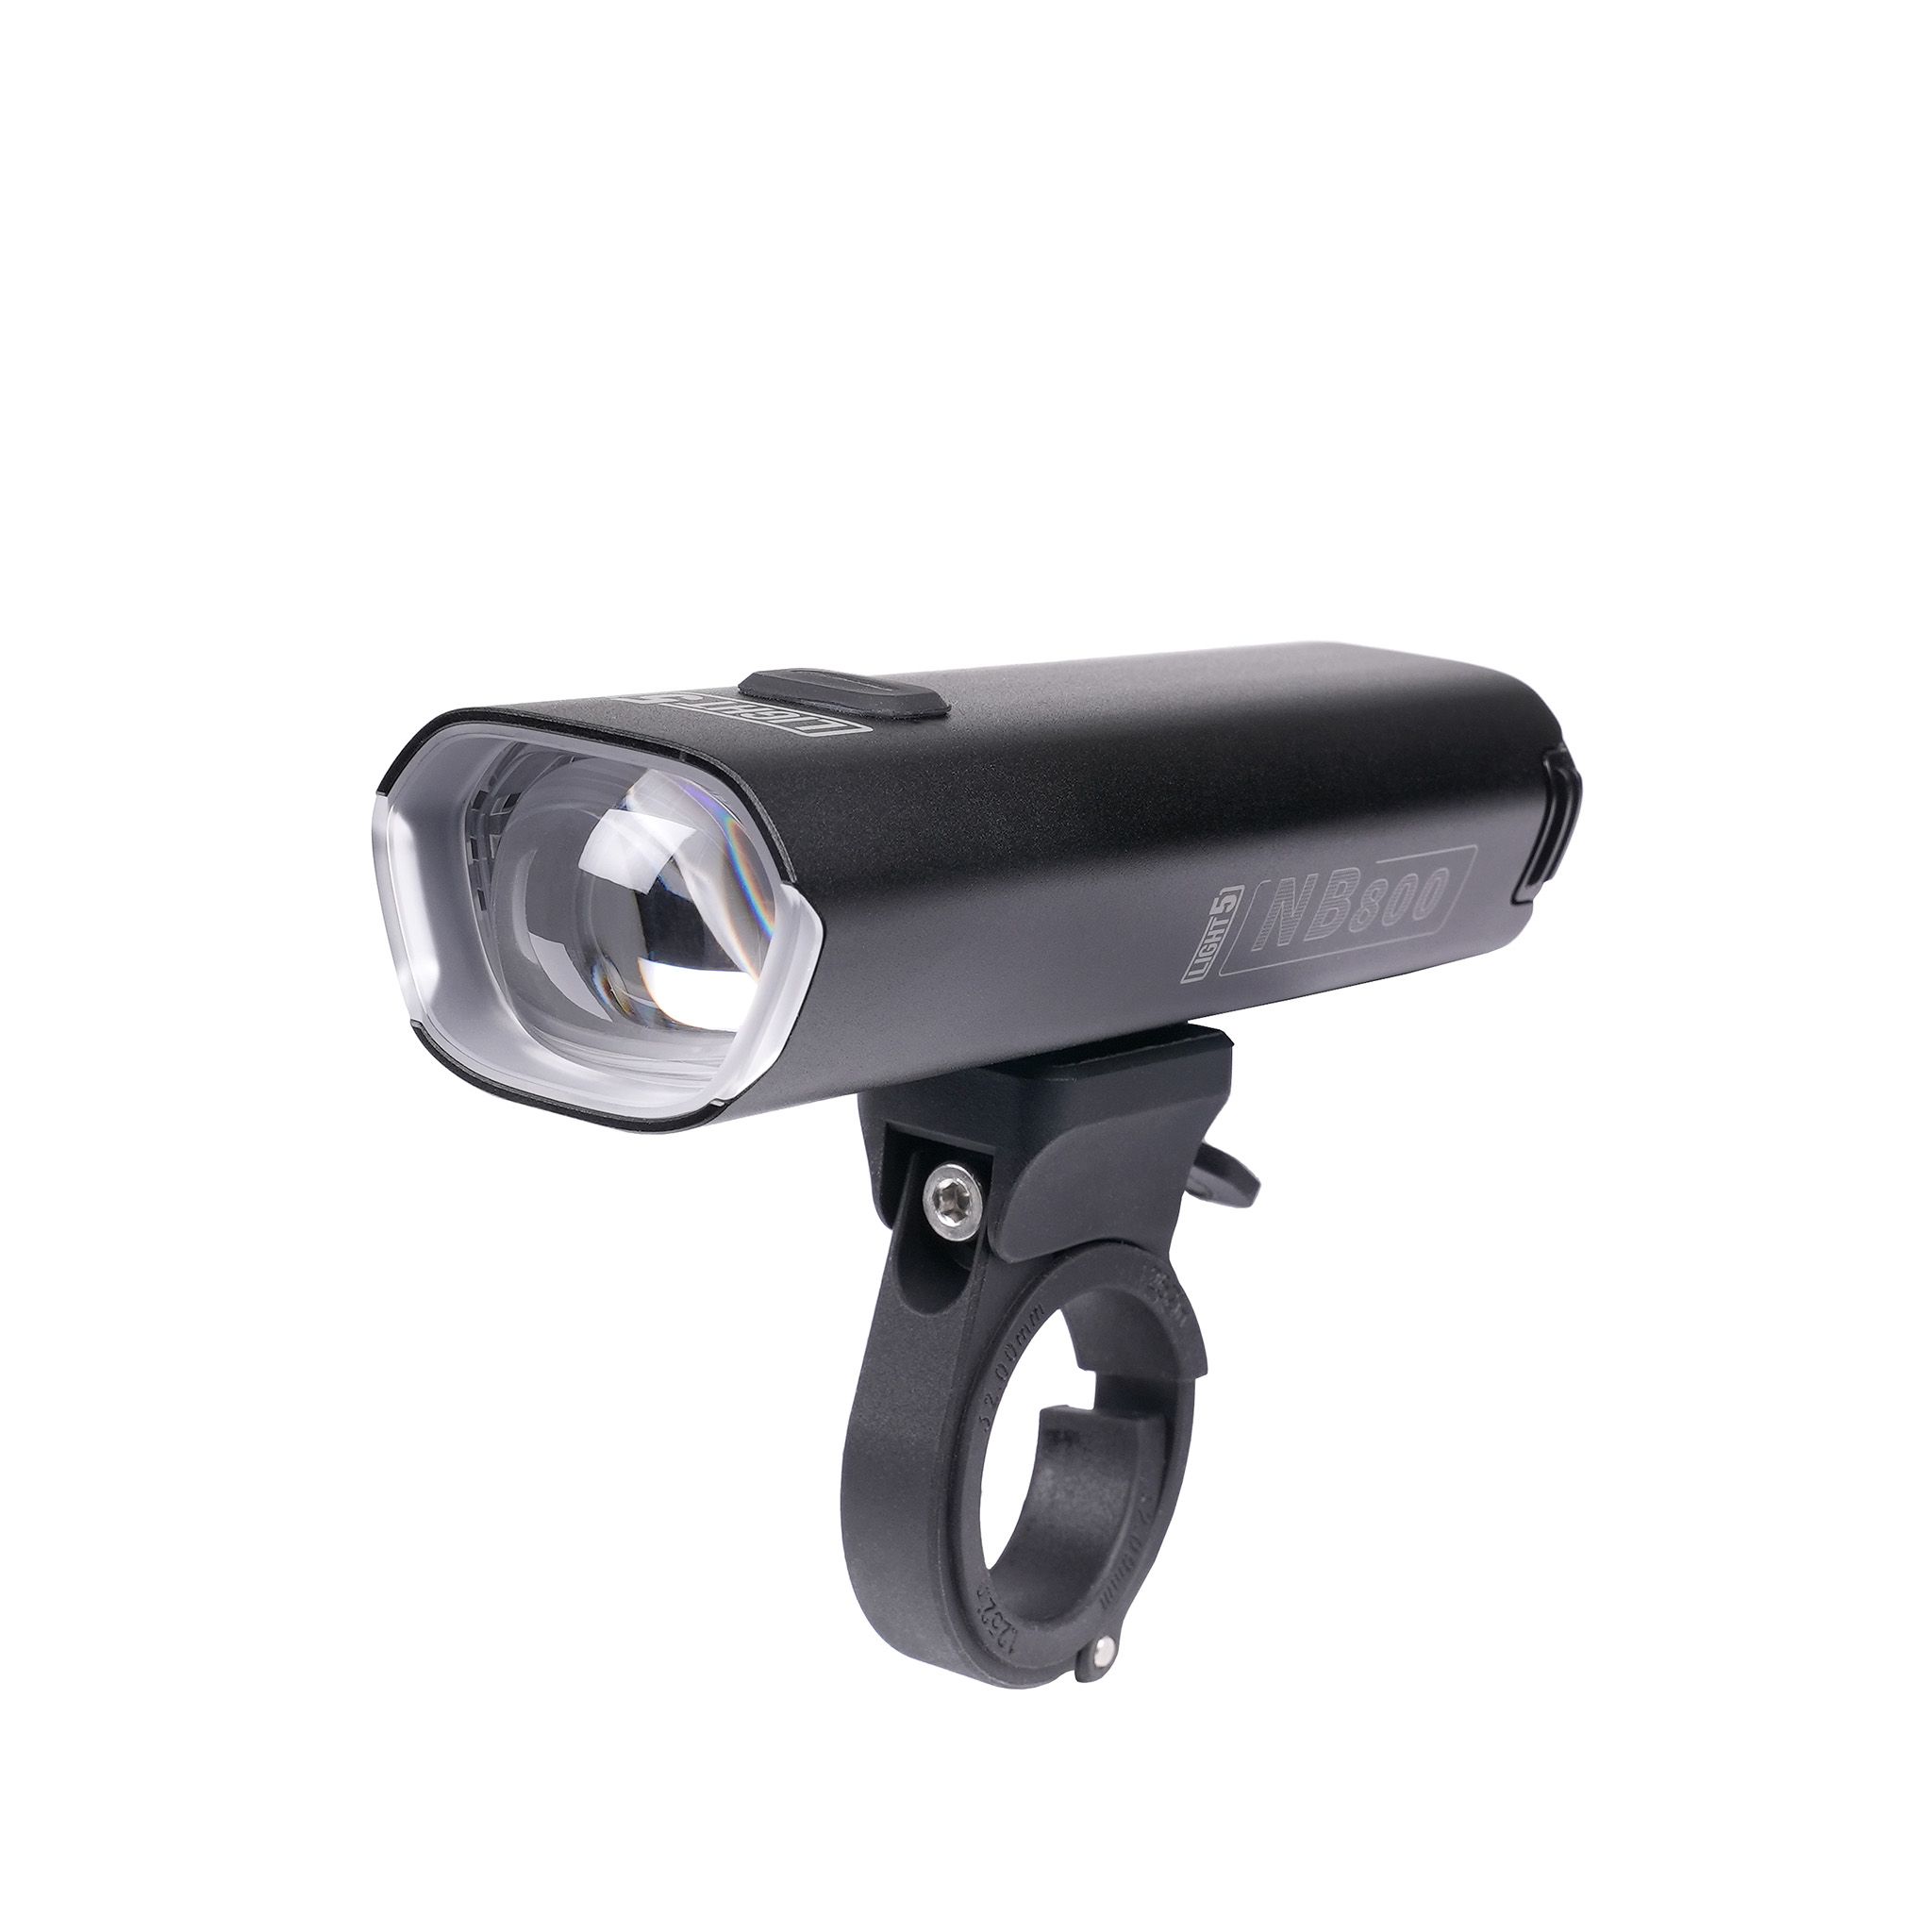 Läs mer om Cykellampa Light5 NB800, 800 lm, Endast framlampa